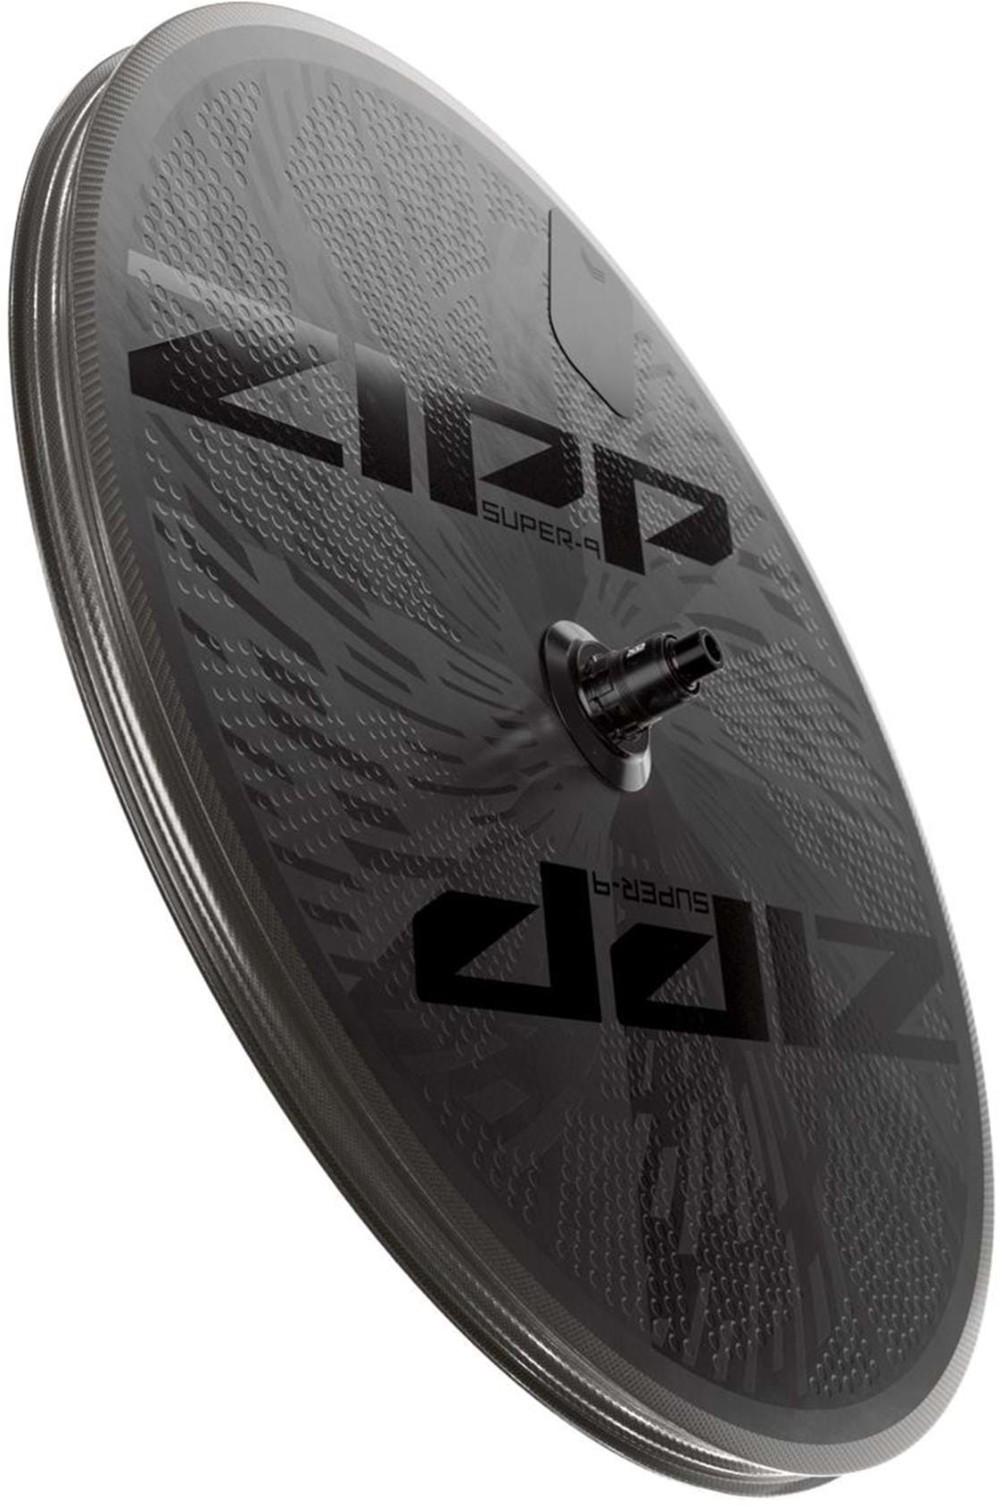 Super-9 Carbon Disc 700c Rear Wheel image 1